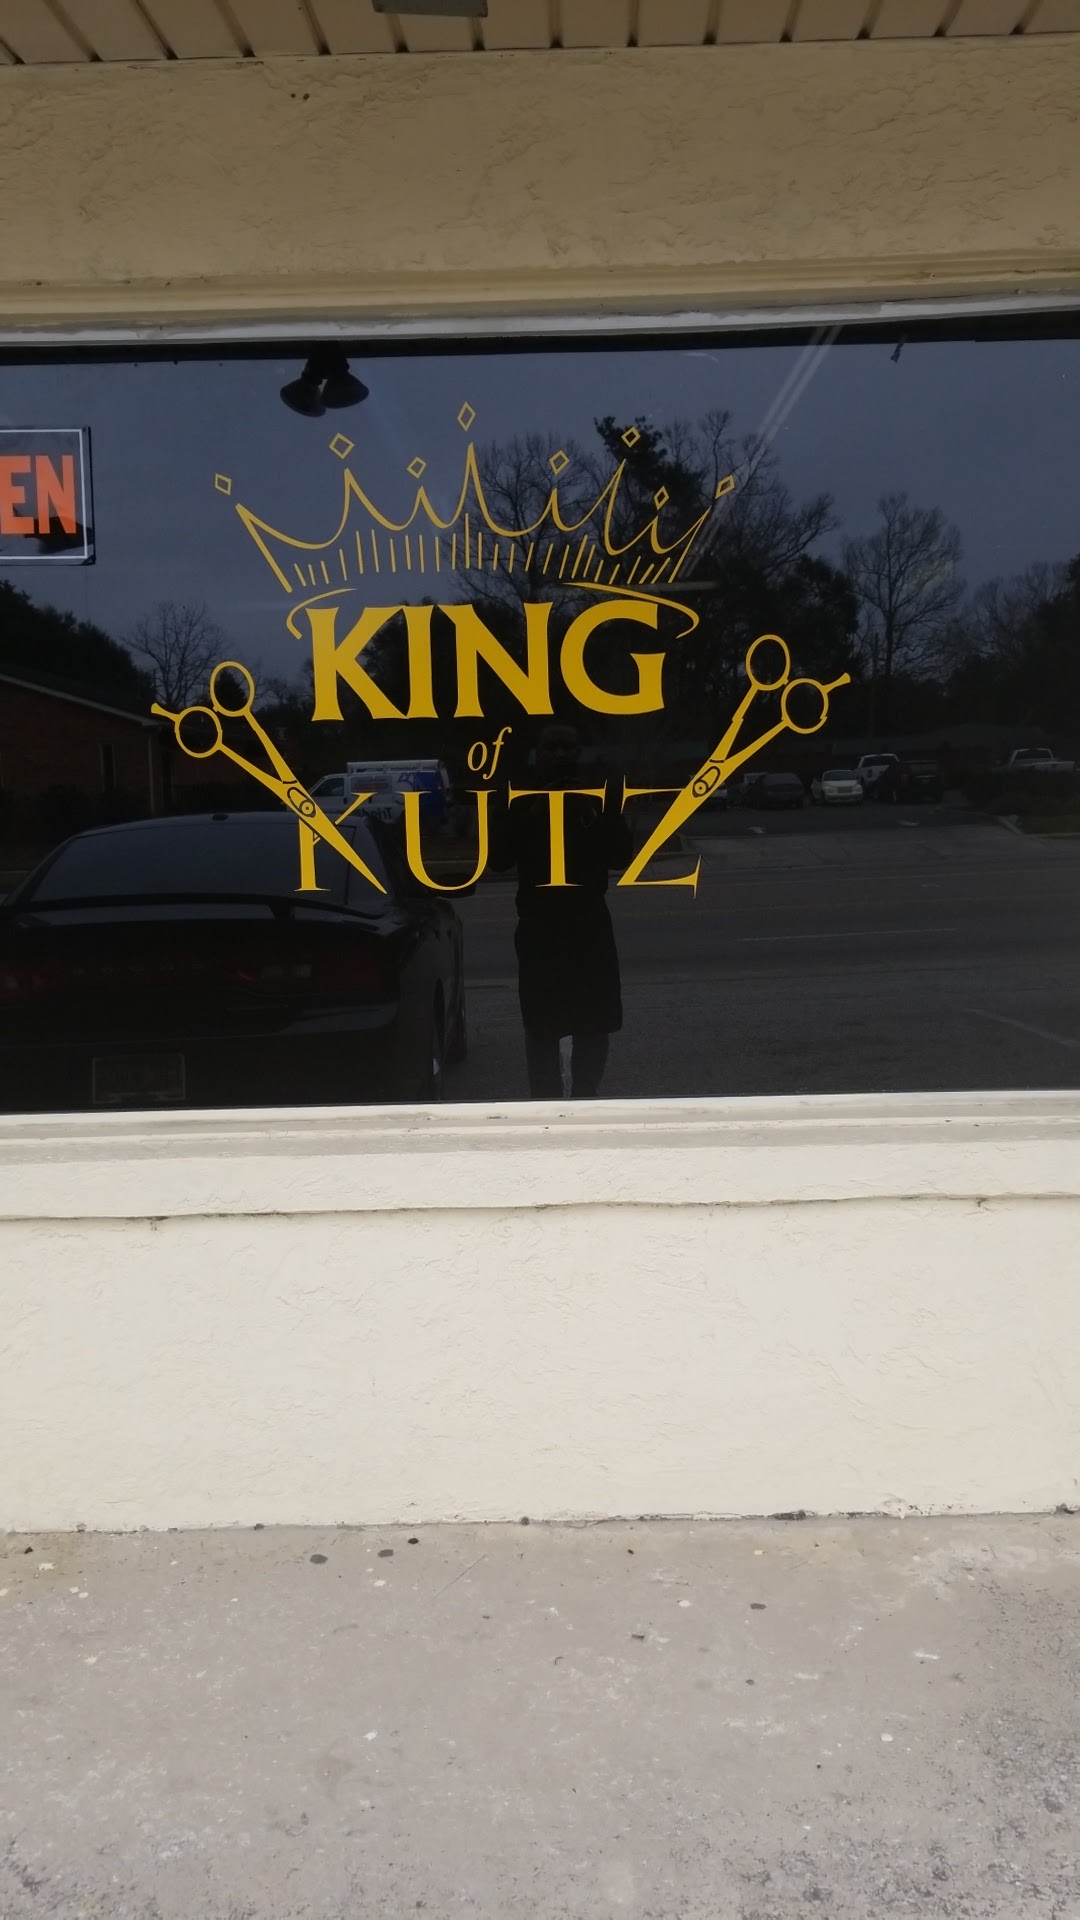 King of Kutz